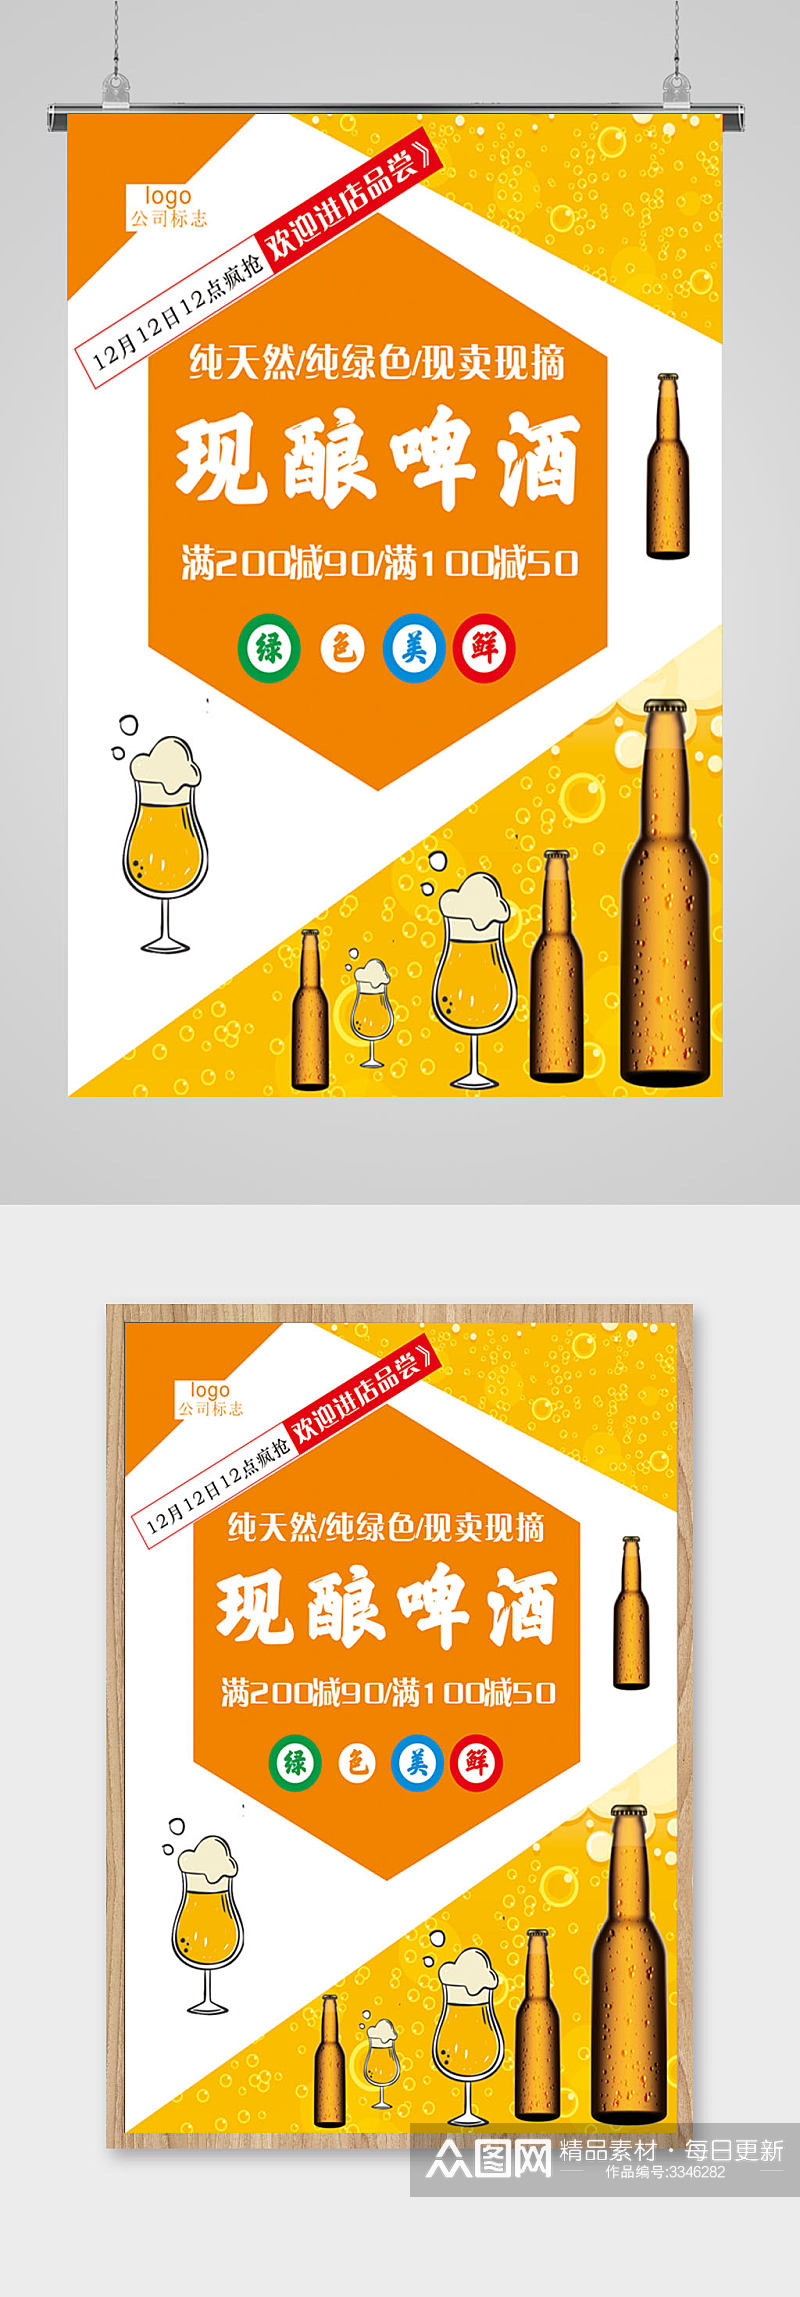 纯天然啤酒节橙色海报素材